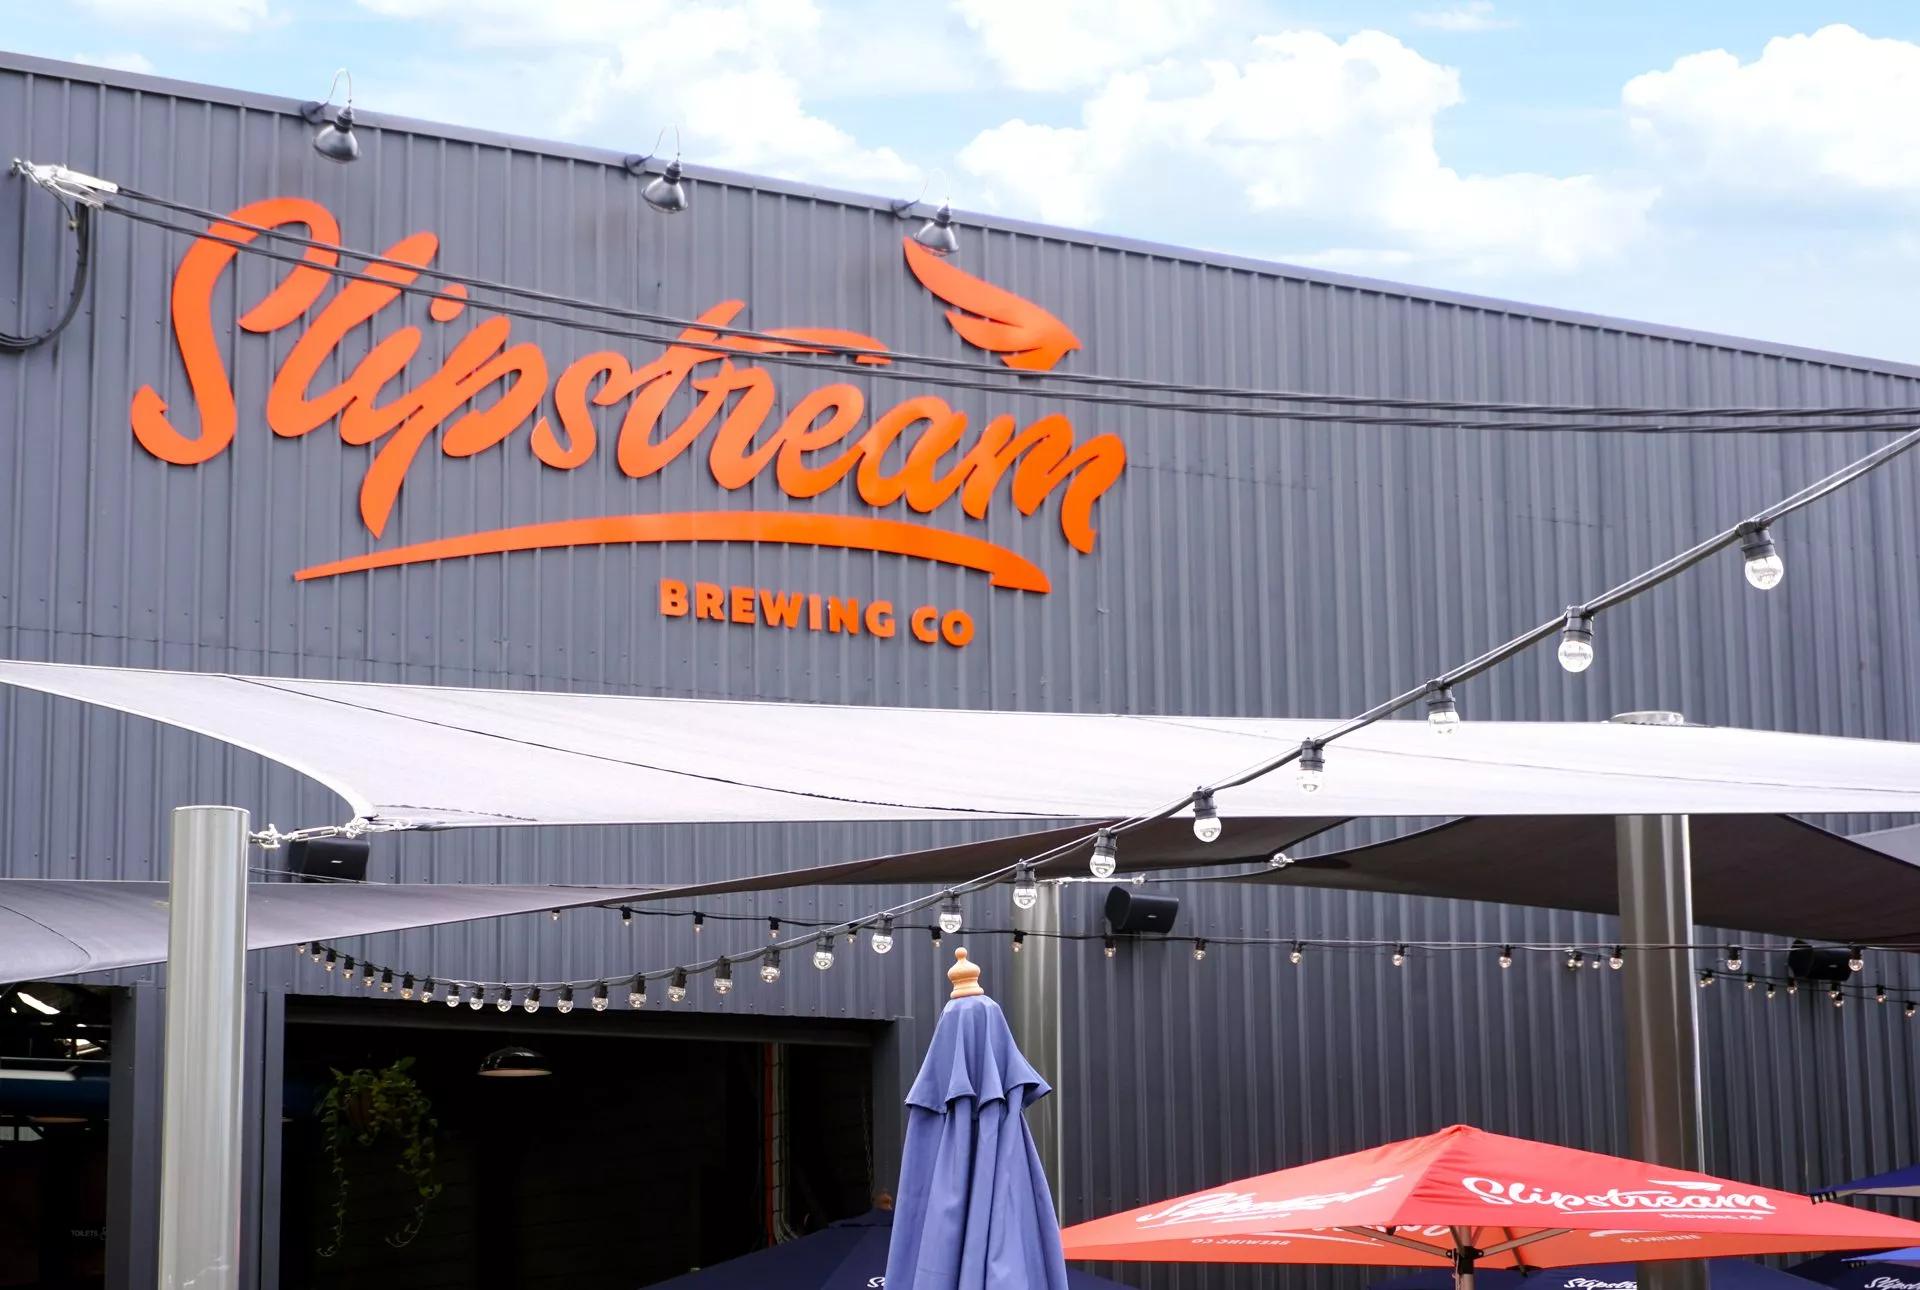 Slipstream-Brauerei